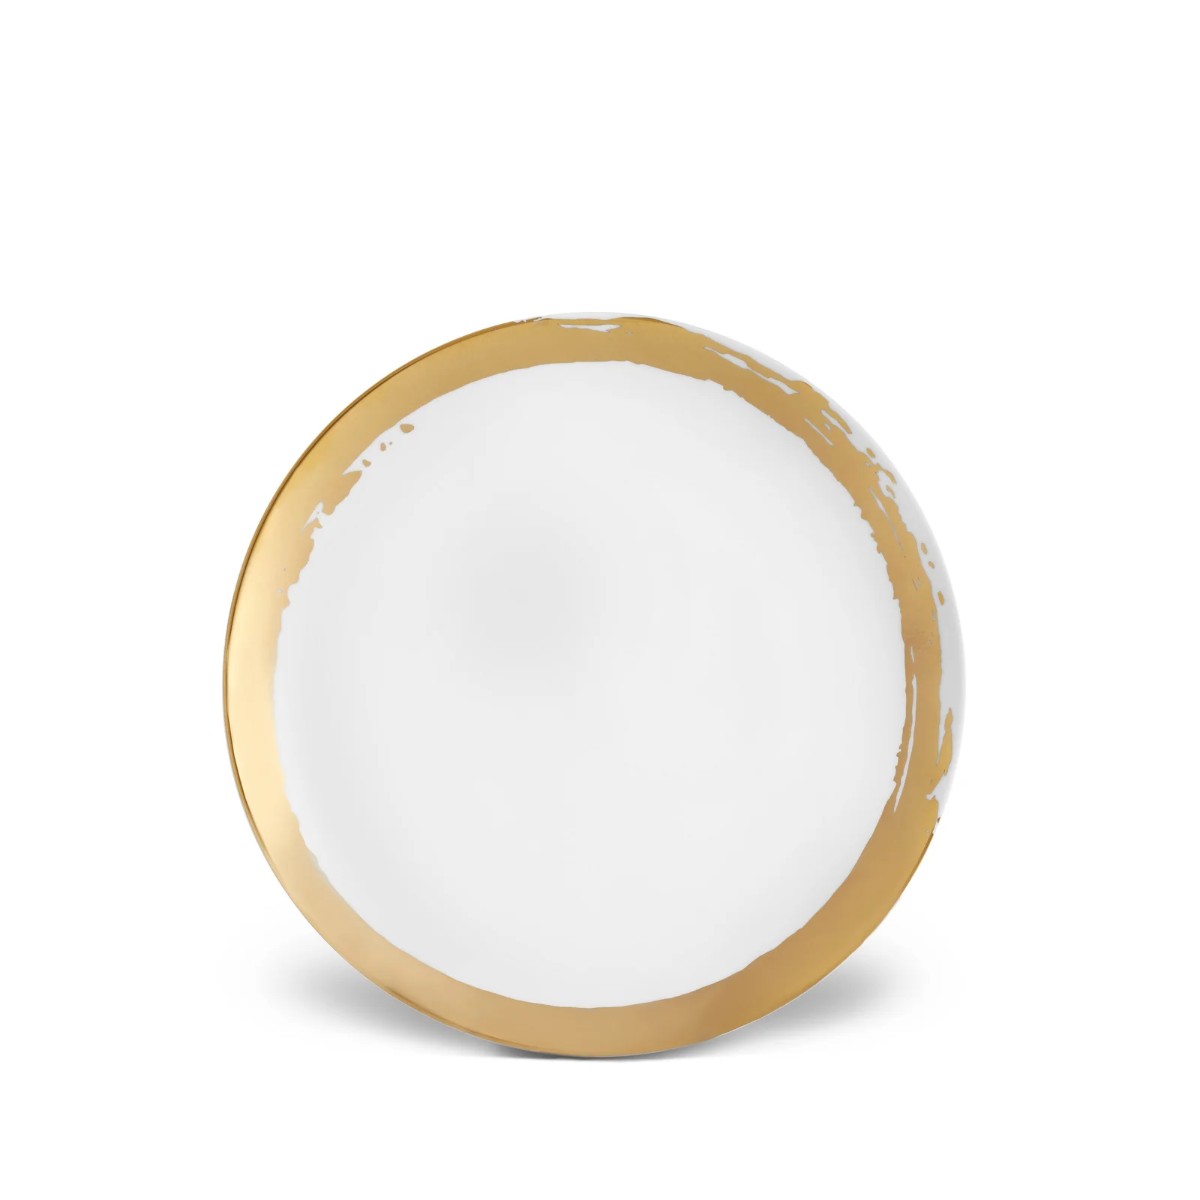 Lobjet Zen Dessert Plate White And Gold